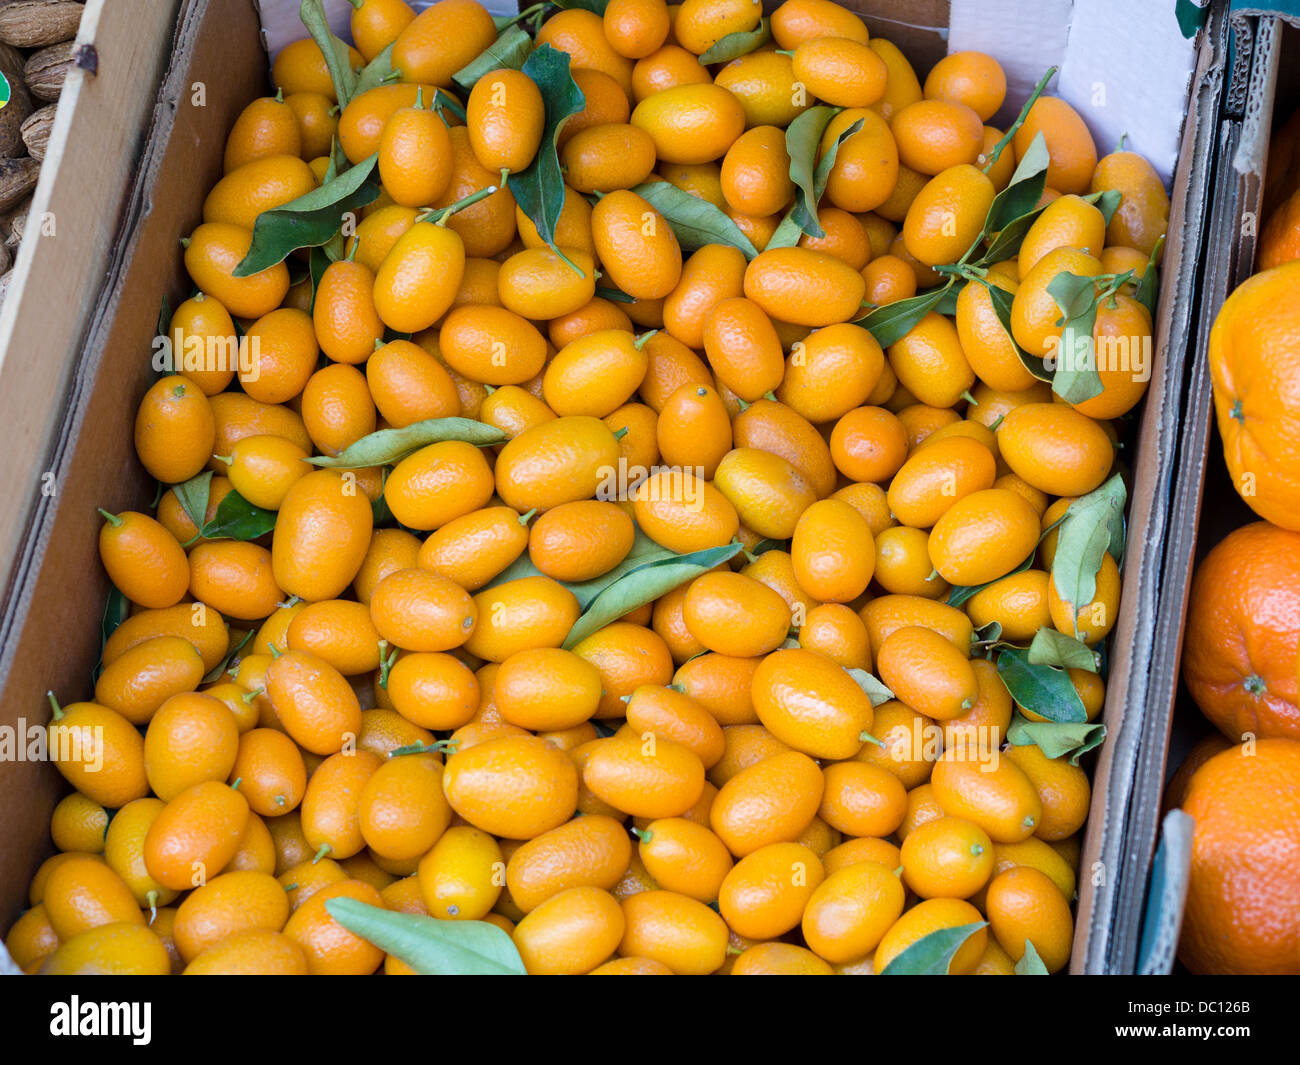 Le kumquat ou cumquats. Une boîte pleine de fruits Kumquat, certains avec des feuilles jointes. Produits frais au marché. Banque D'Images